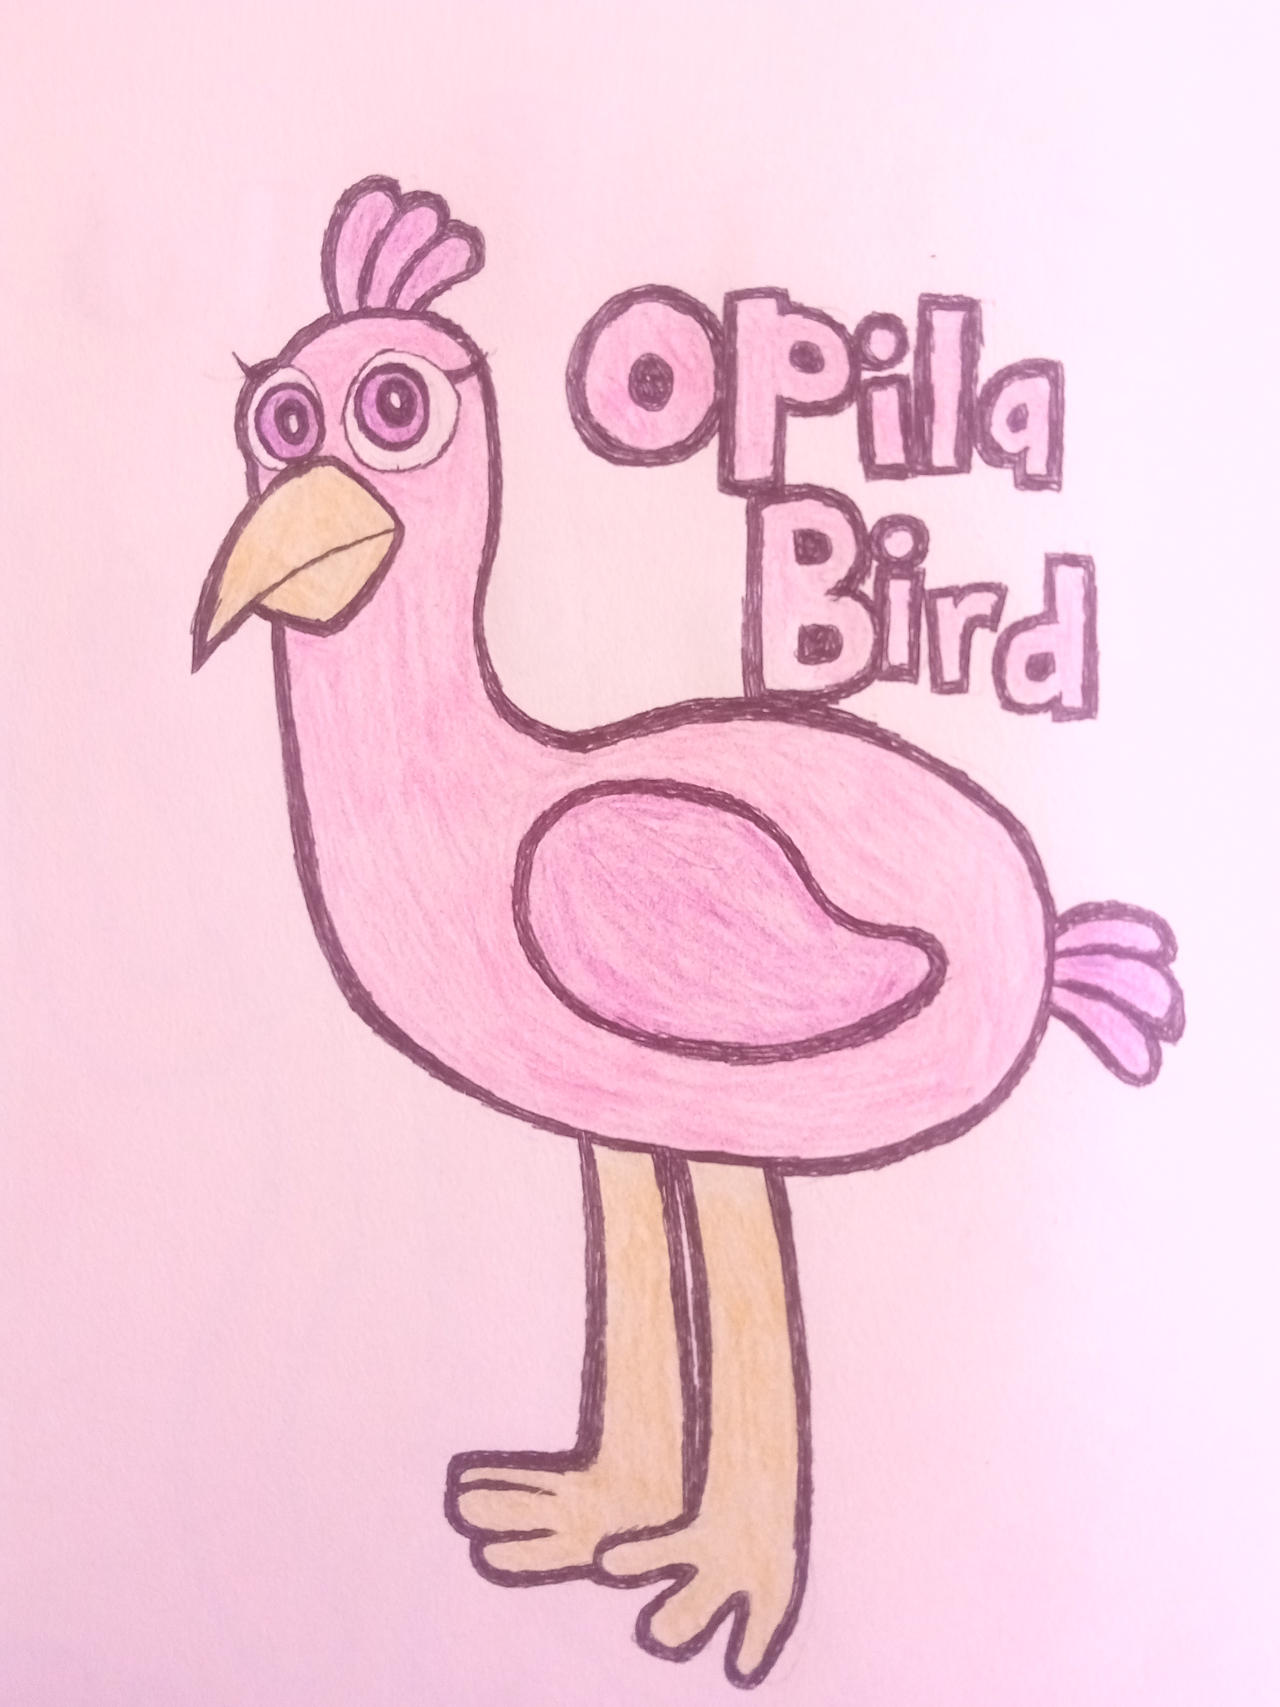 Where does Opila Bird go after? - Garten of Banban 